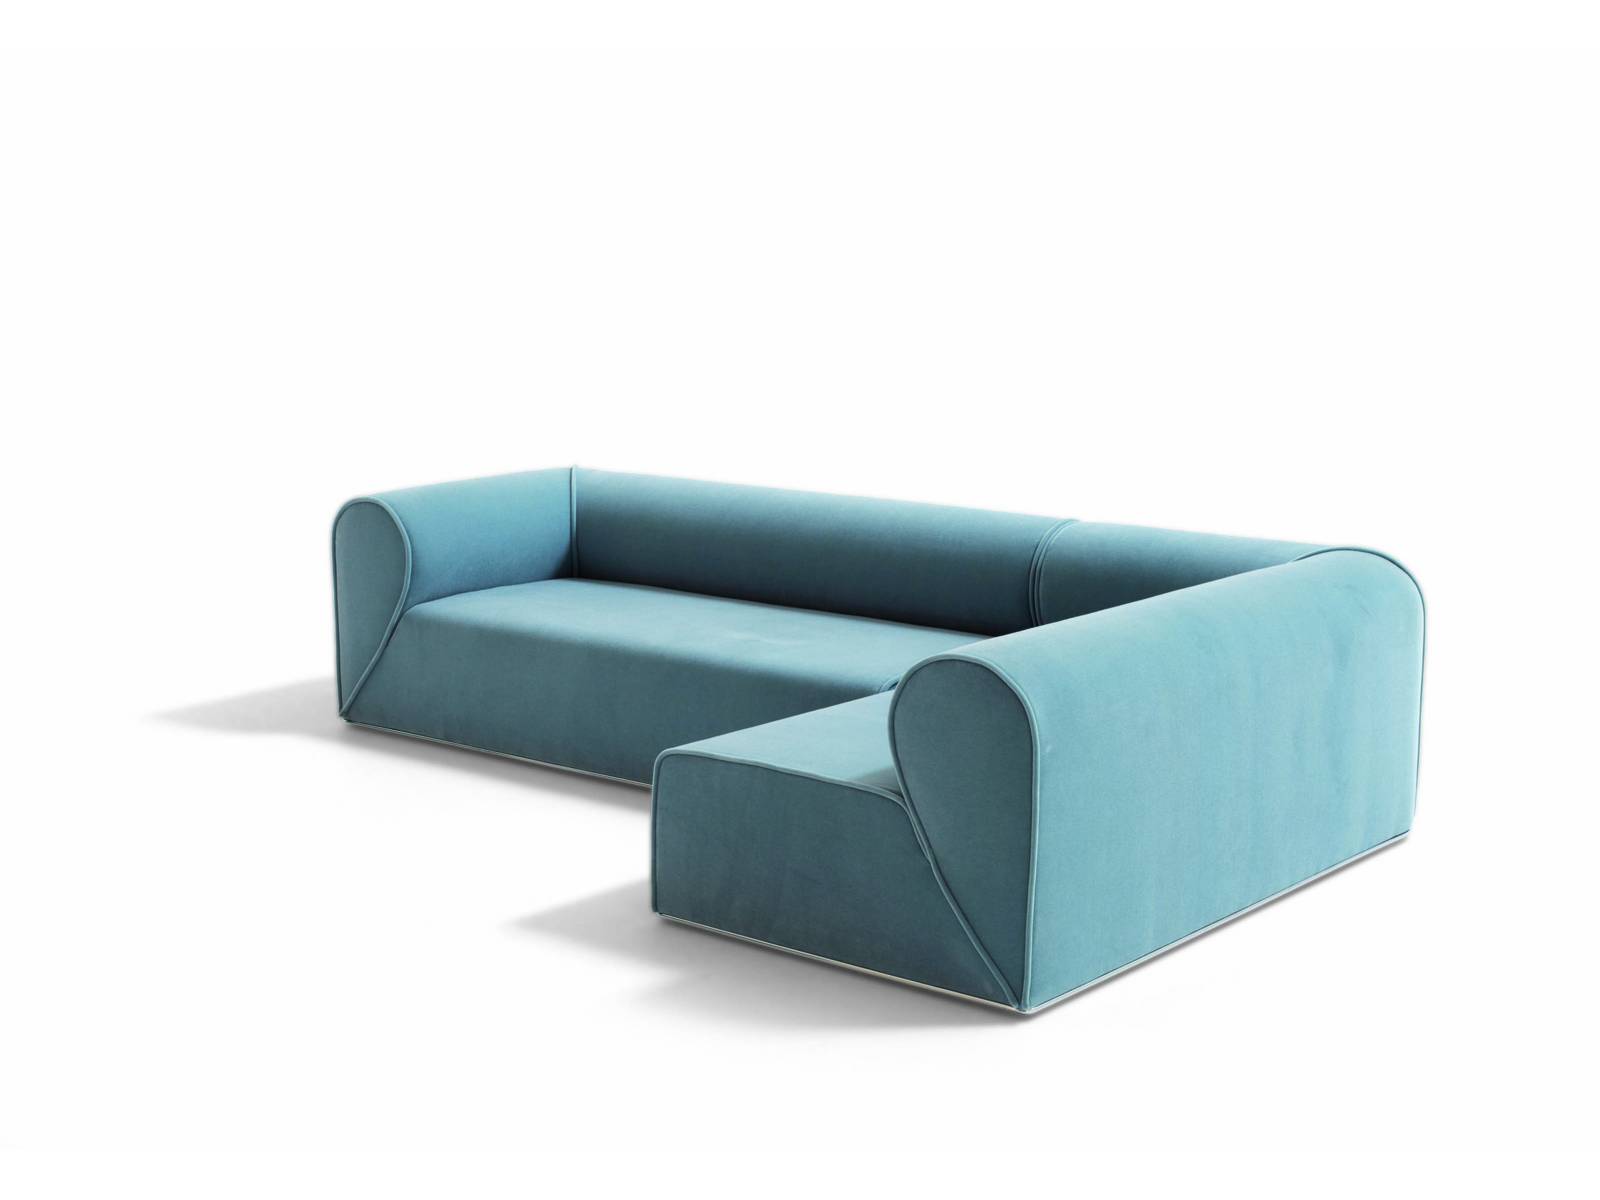 Heartbreaker ist eine minimalistische Sofa-Kollektion des Kopenhagener Designers Johannes Torpe. Seinen Namen gab ihr das spezielle Design der Armlehnen, die jeweils ein halbes Herz bilden und sich zu einem vollen Herzen verbinden, wenn mehrere Sofas nebeneinander stehen. Moroso.